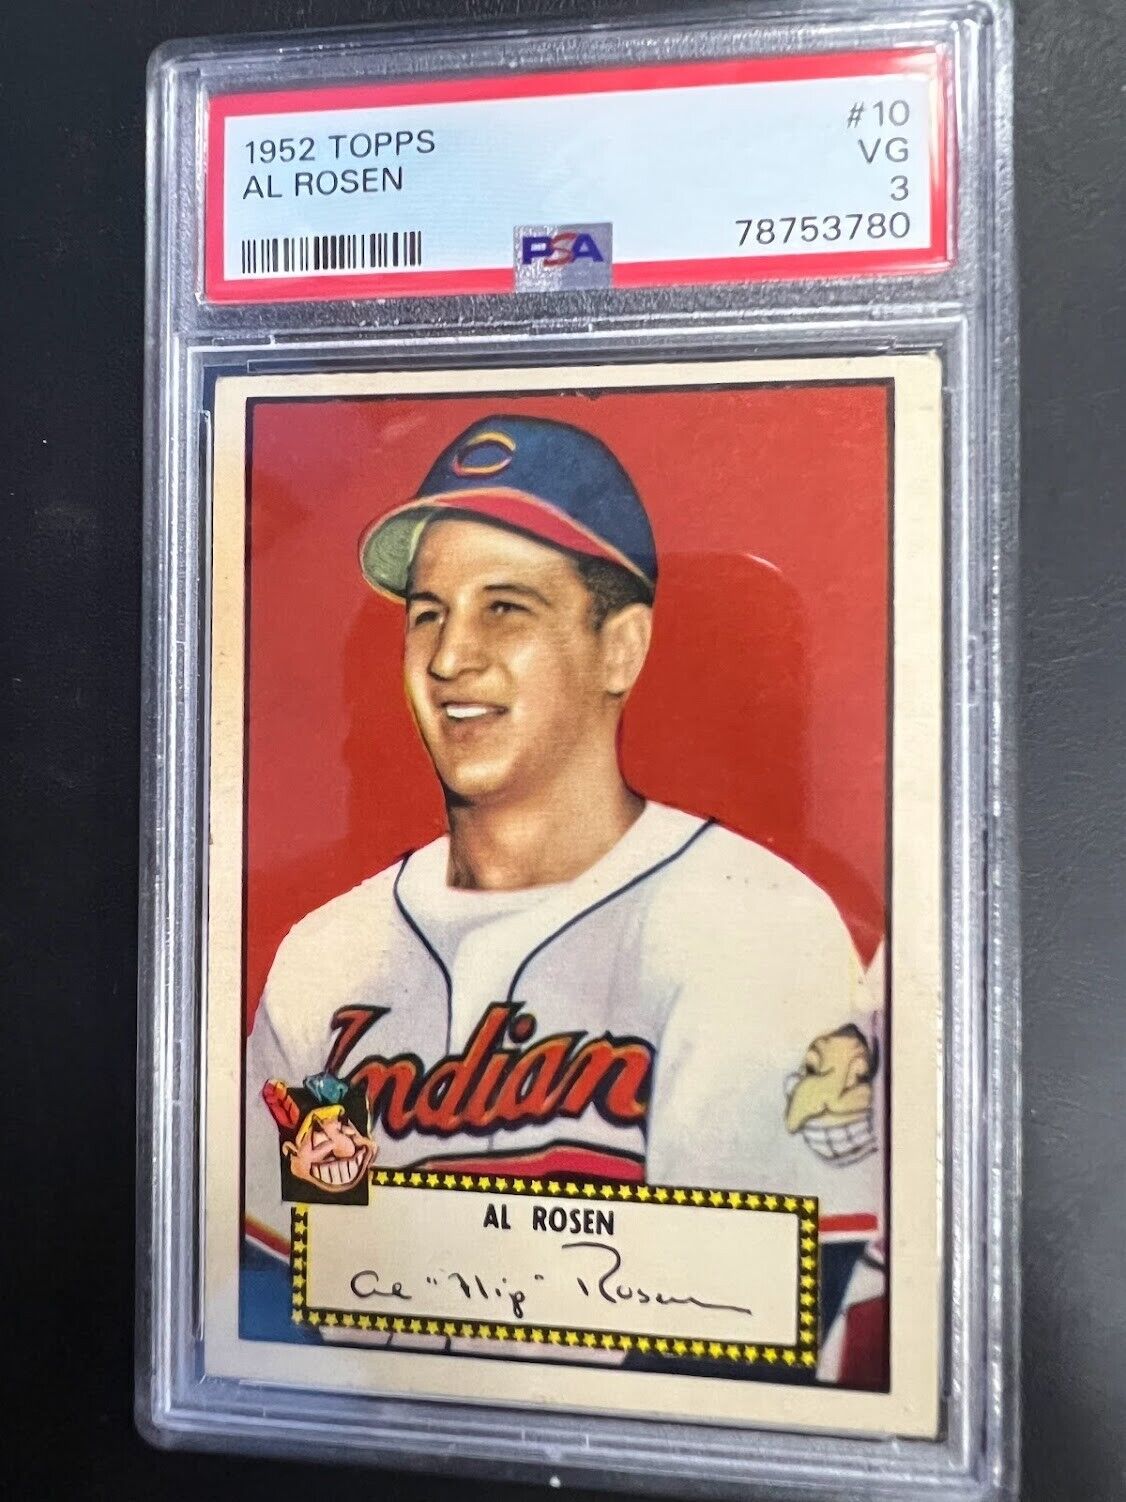 1952 Topps #10 Al Rosen PSA VG 3 Cleveland Indians vintage baseball card J